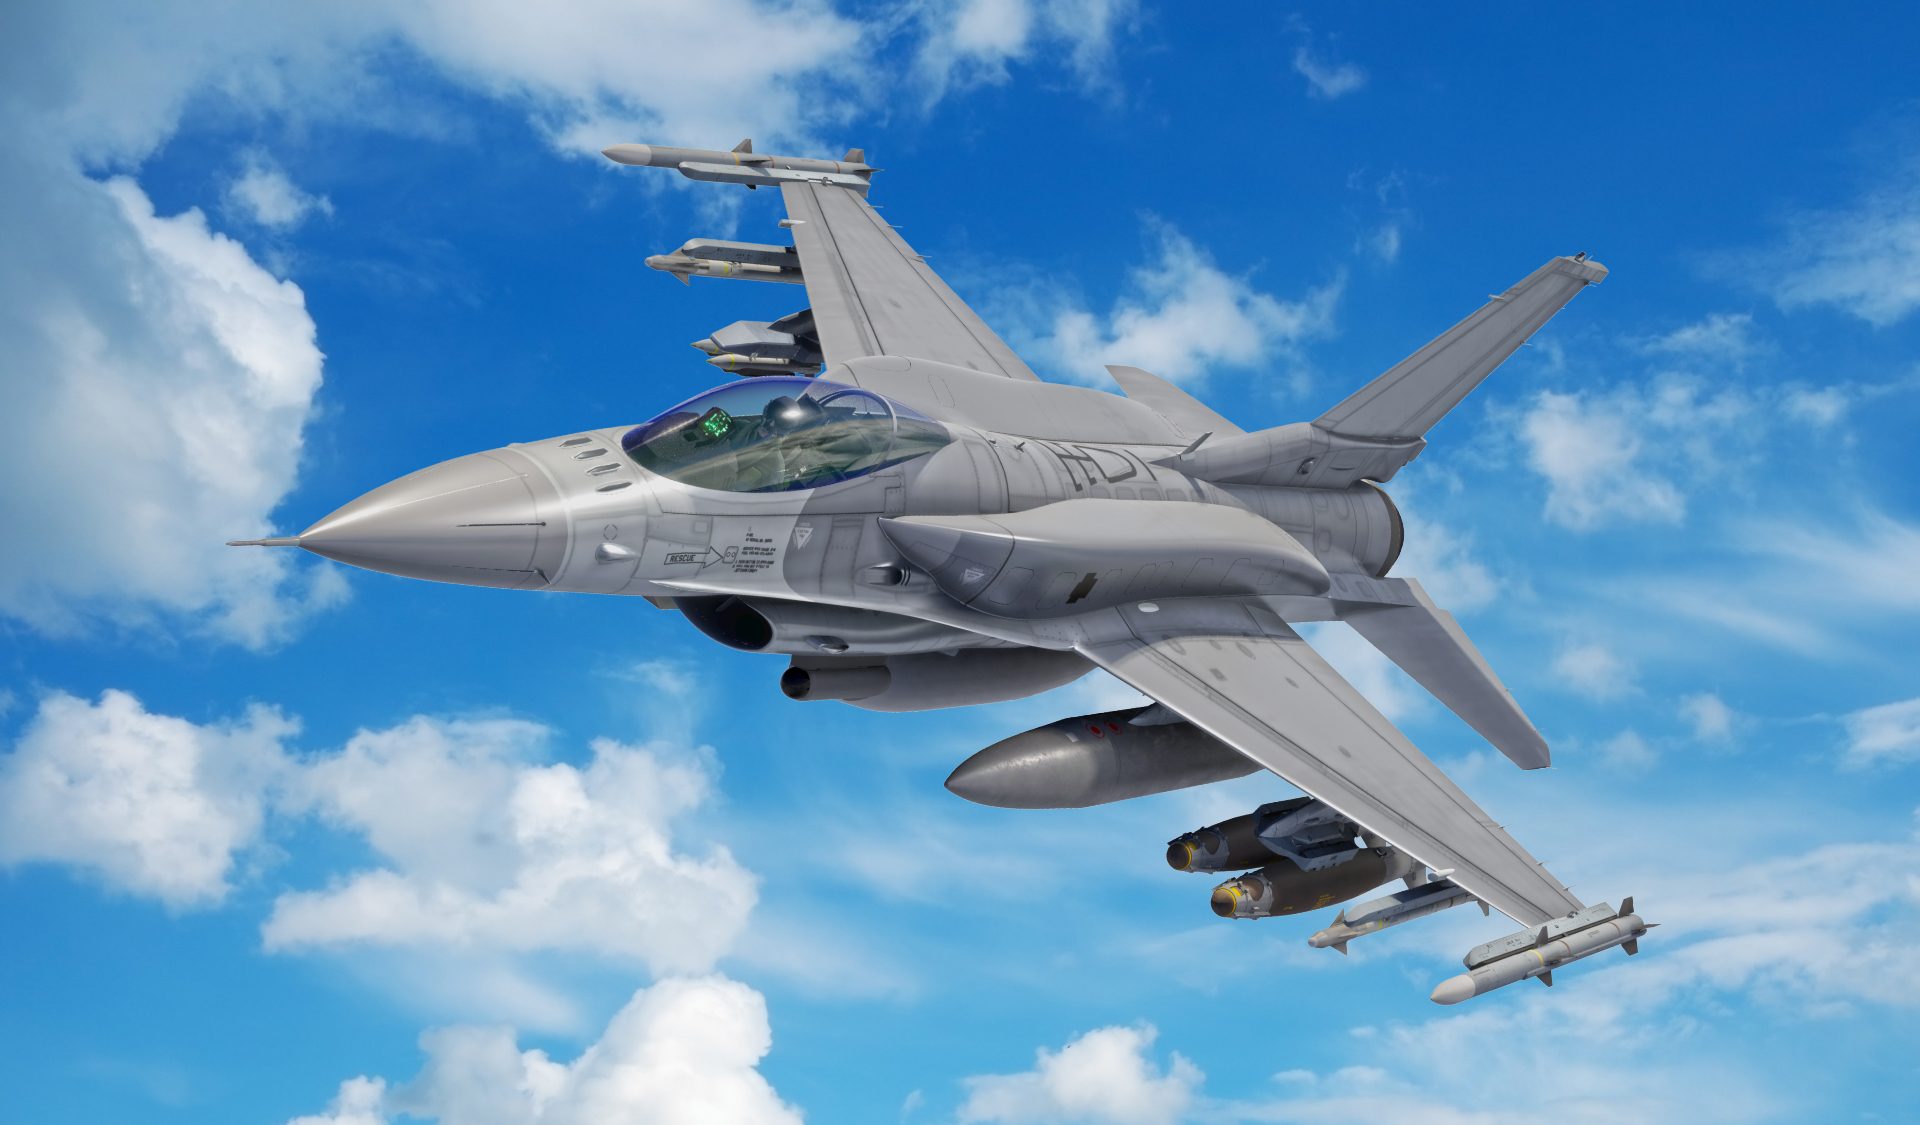 The Drive: Първият полет на F-16 Block 70/72 ще бъде в началото на 2023 г.